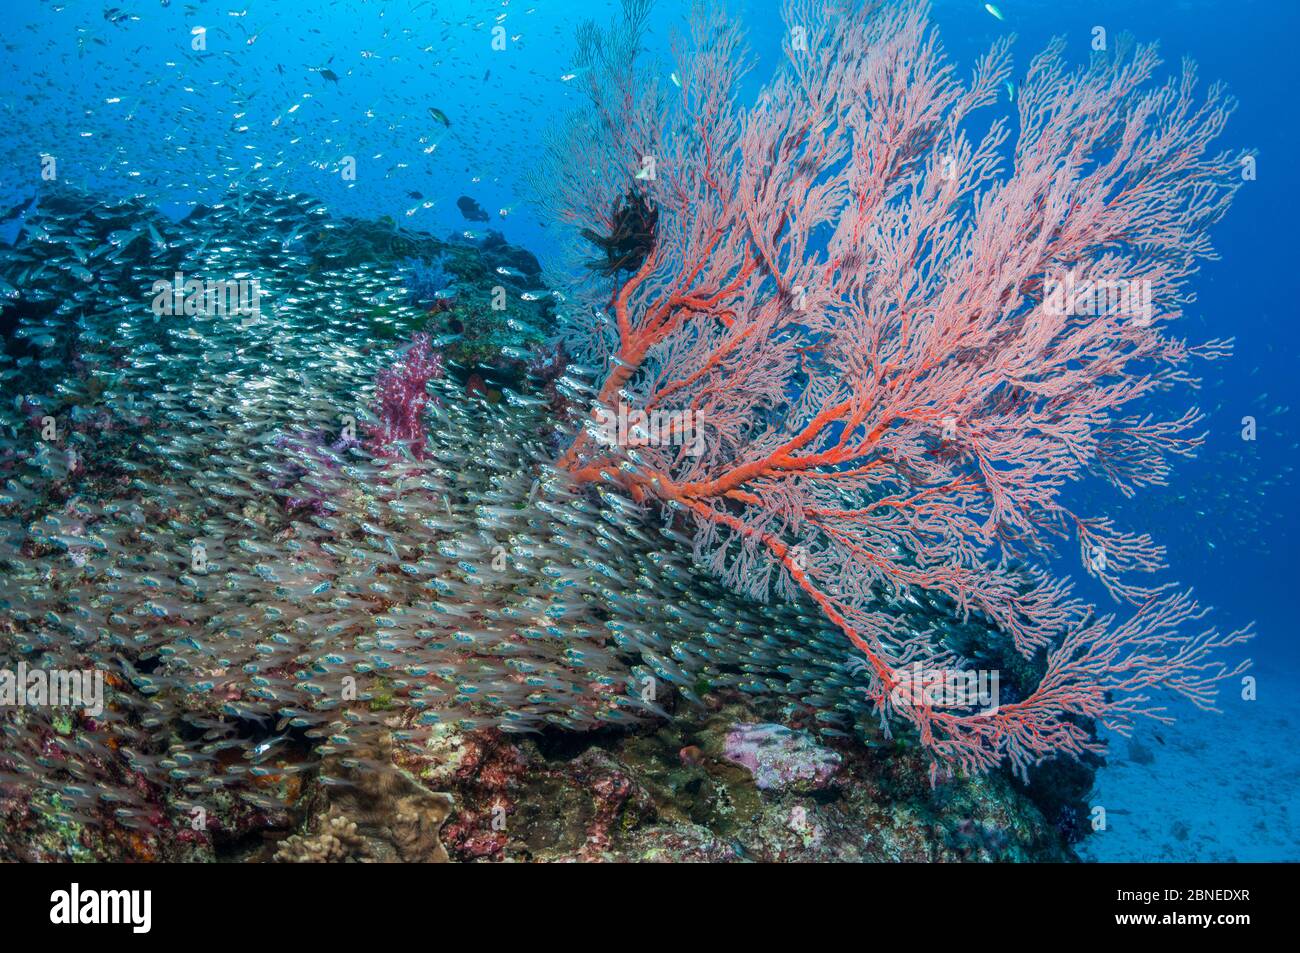 Balayeuses pygmées (Parapriacanthus ransonetti) avec un ventilateur de mer gorgonien (Melithaea sp.) Îles Similan, Mer d'Andaman, Thaïlande. Banque D'Images